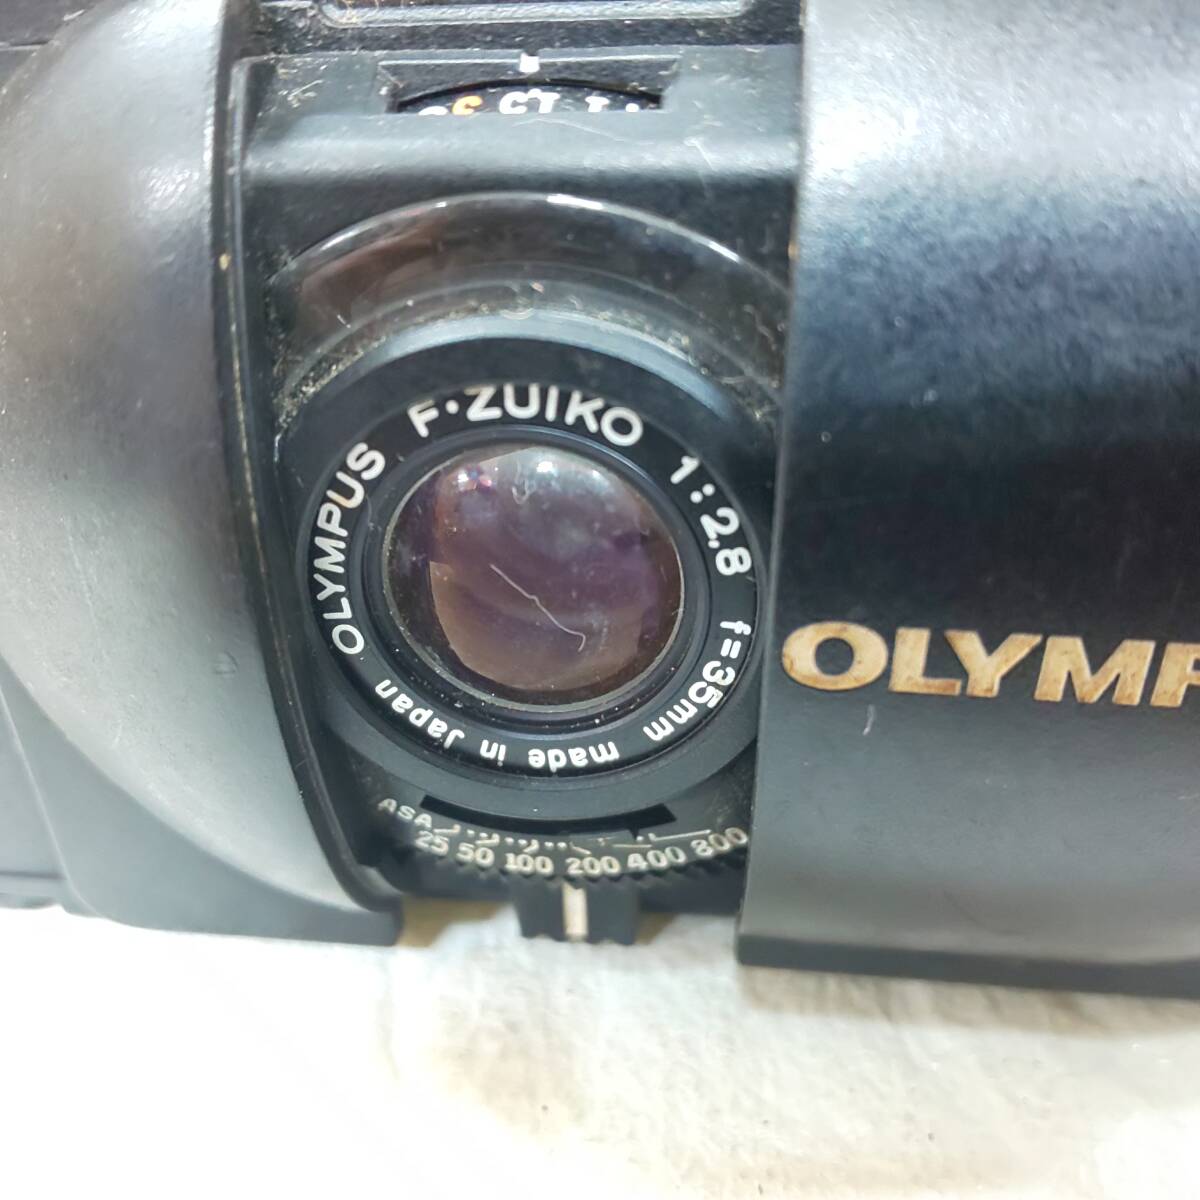 ◎オリンパス◎OLYMPUS XA カプセルカメラ / フラッシュ(A11) / OLYMPUS F-Zuiko 35mm 1:2.8 シャッターOK 即発送_画像6